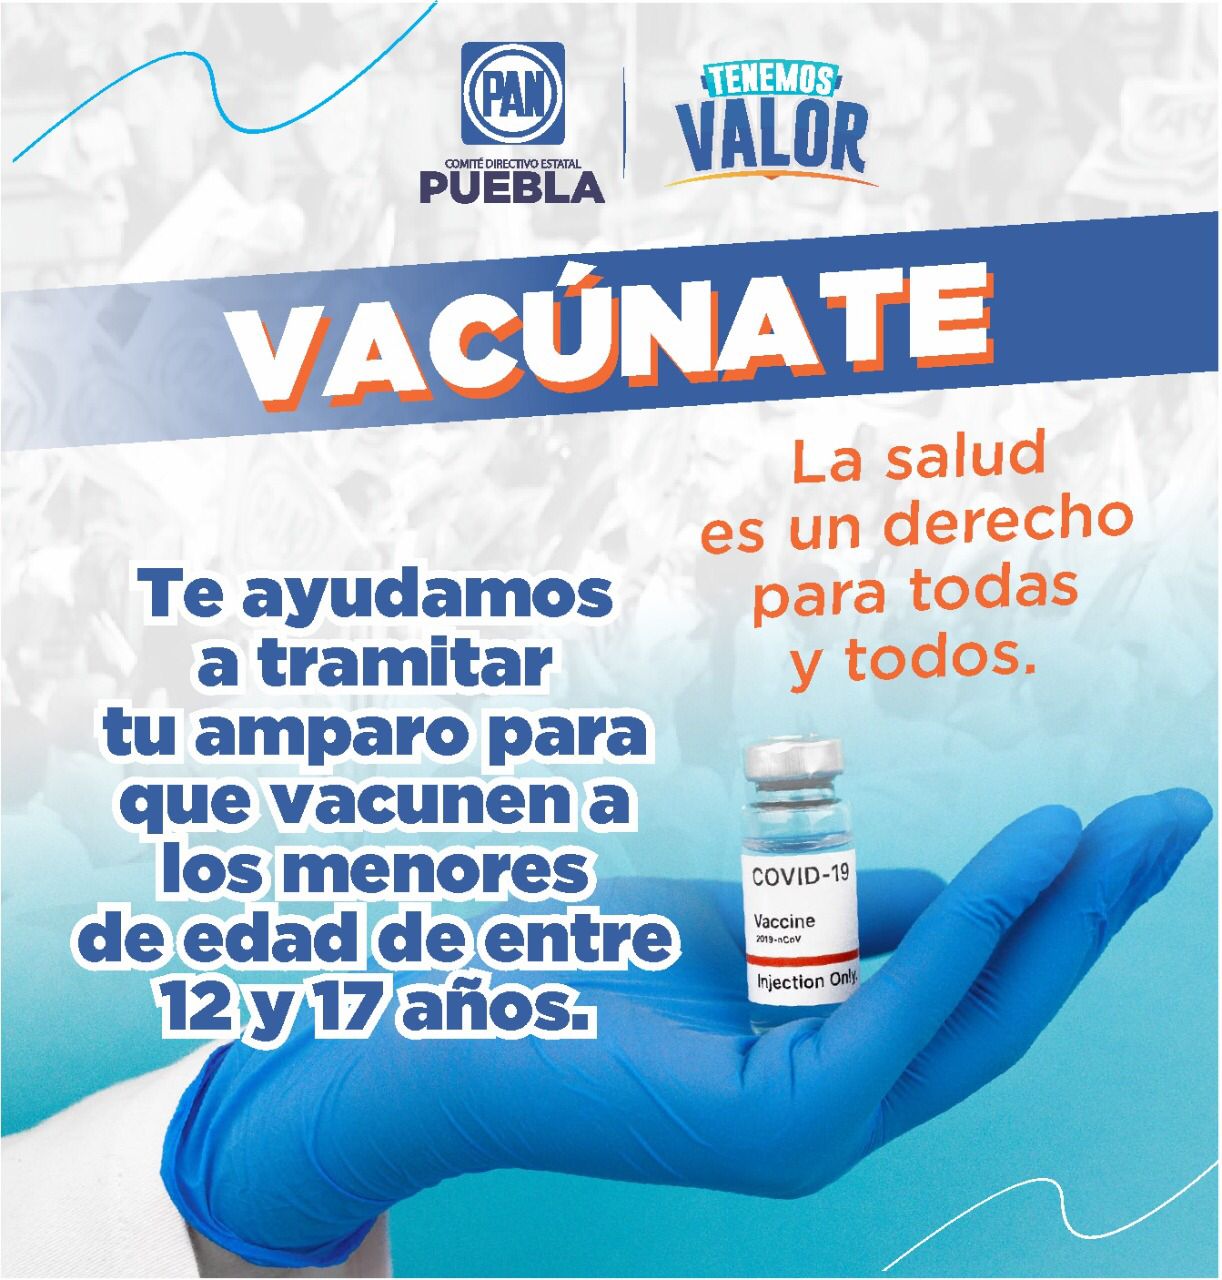 PAN Puebla apoyará a poblanos a tramitar su amparo para que vacunen a menores de 12 años a 18 años contra covid-19